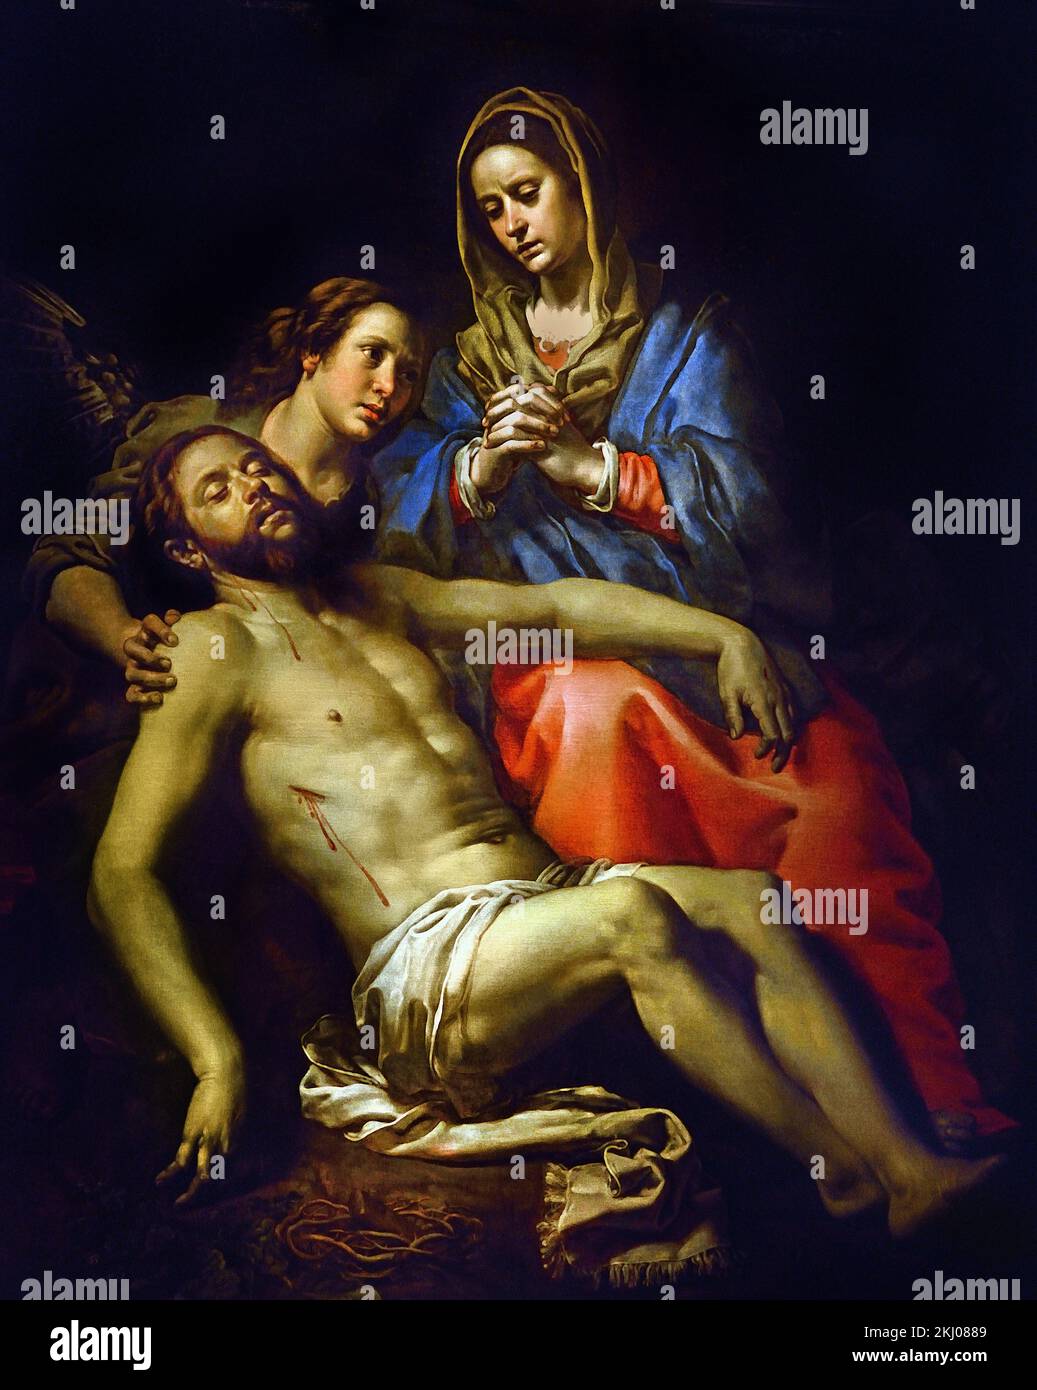 Pieta 1622 von Theodoor - Thedore van Loon 1581-1649 Flämisch Belgien die Niederlande Jungfrau Maria, hält und trauert, Leib Jesu, Maria die Mutter trauert, Leib Jesu, nach der Kreuzigung, Stockfoto